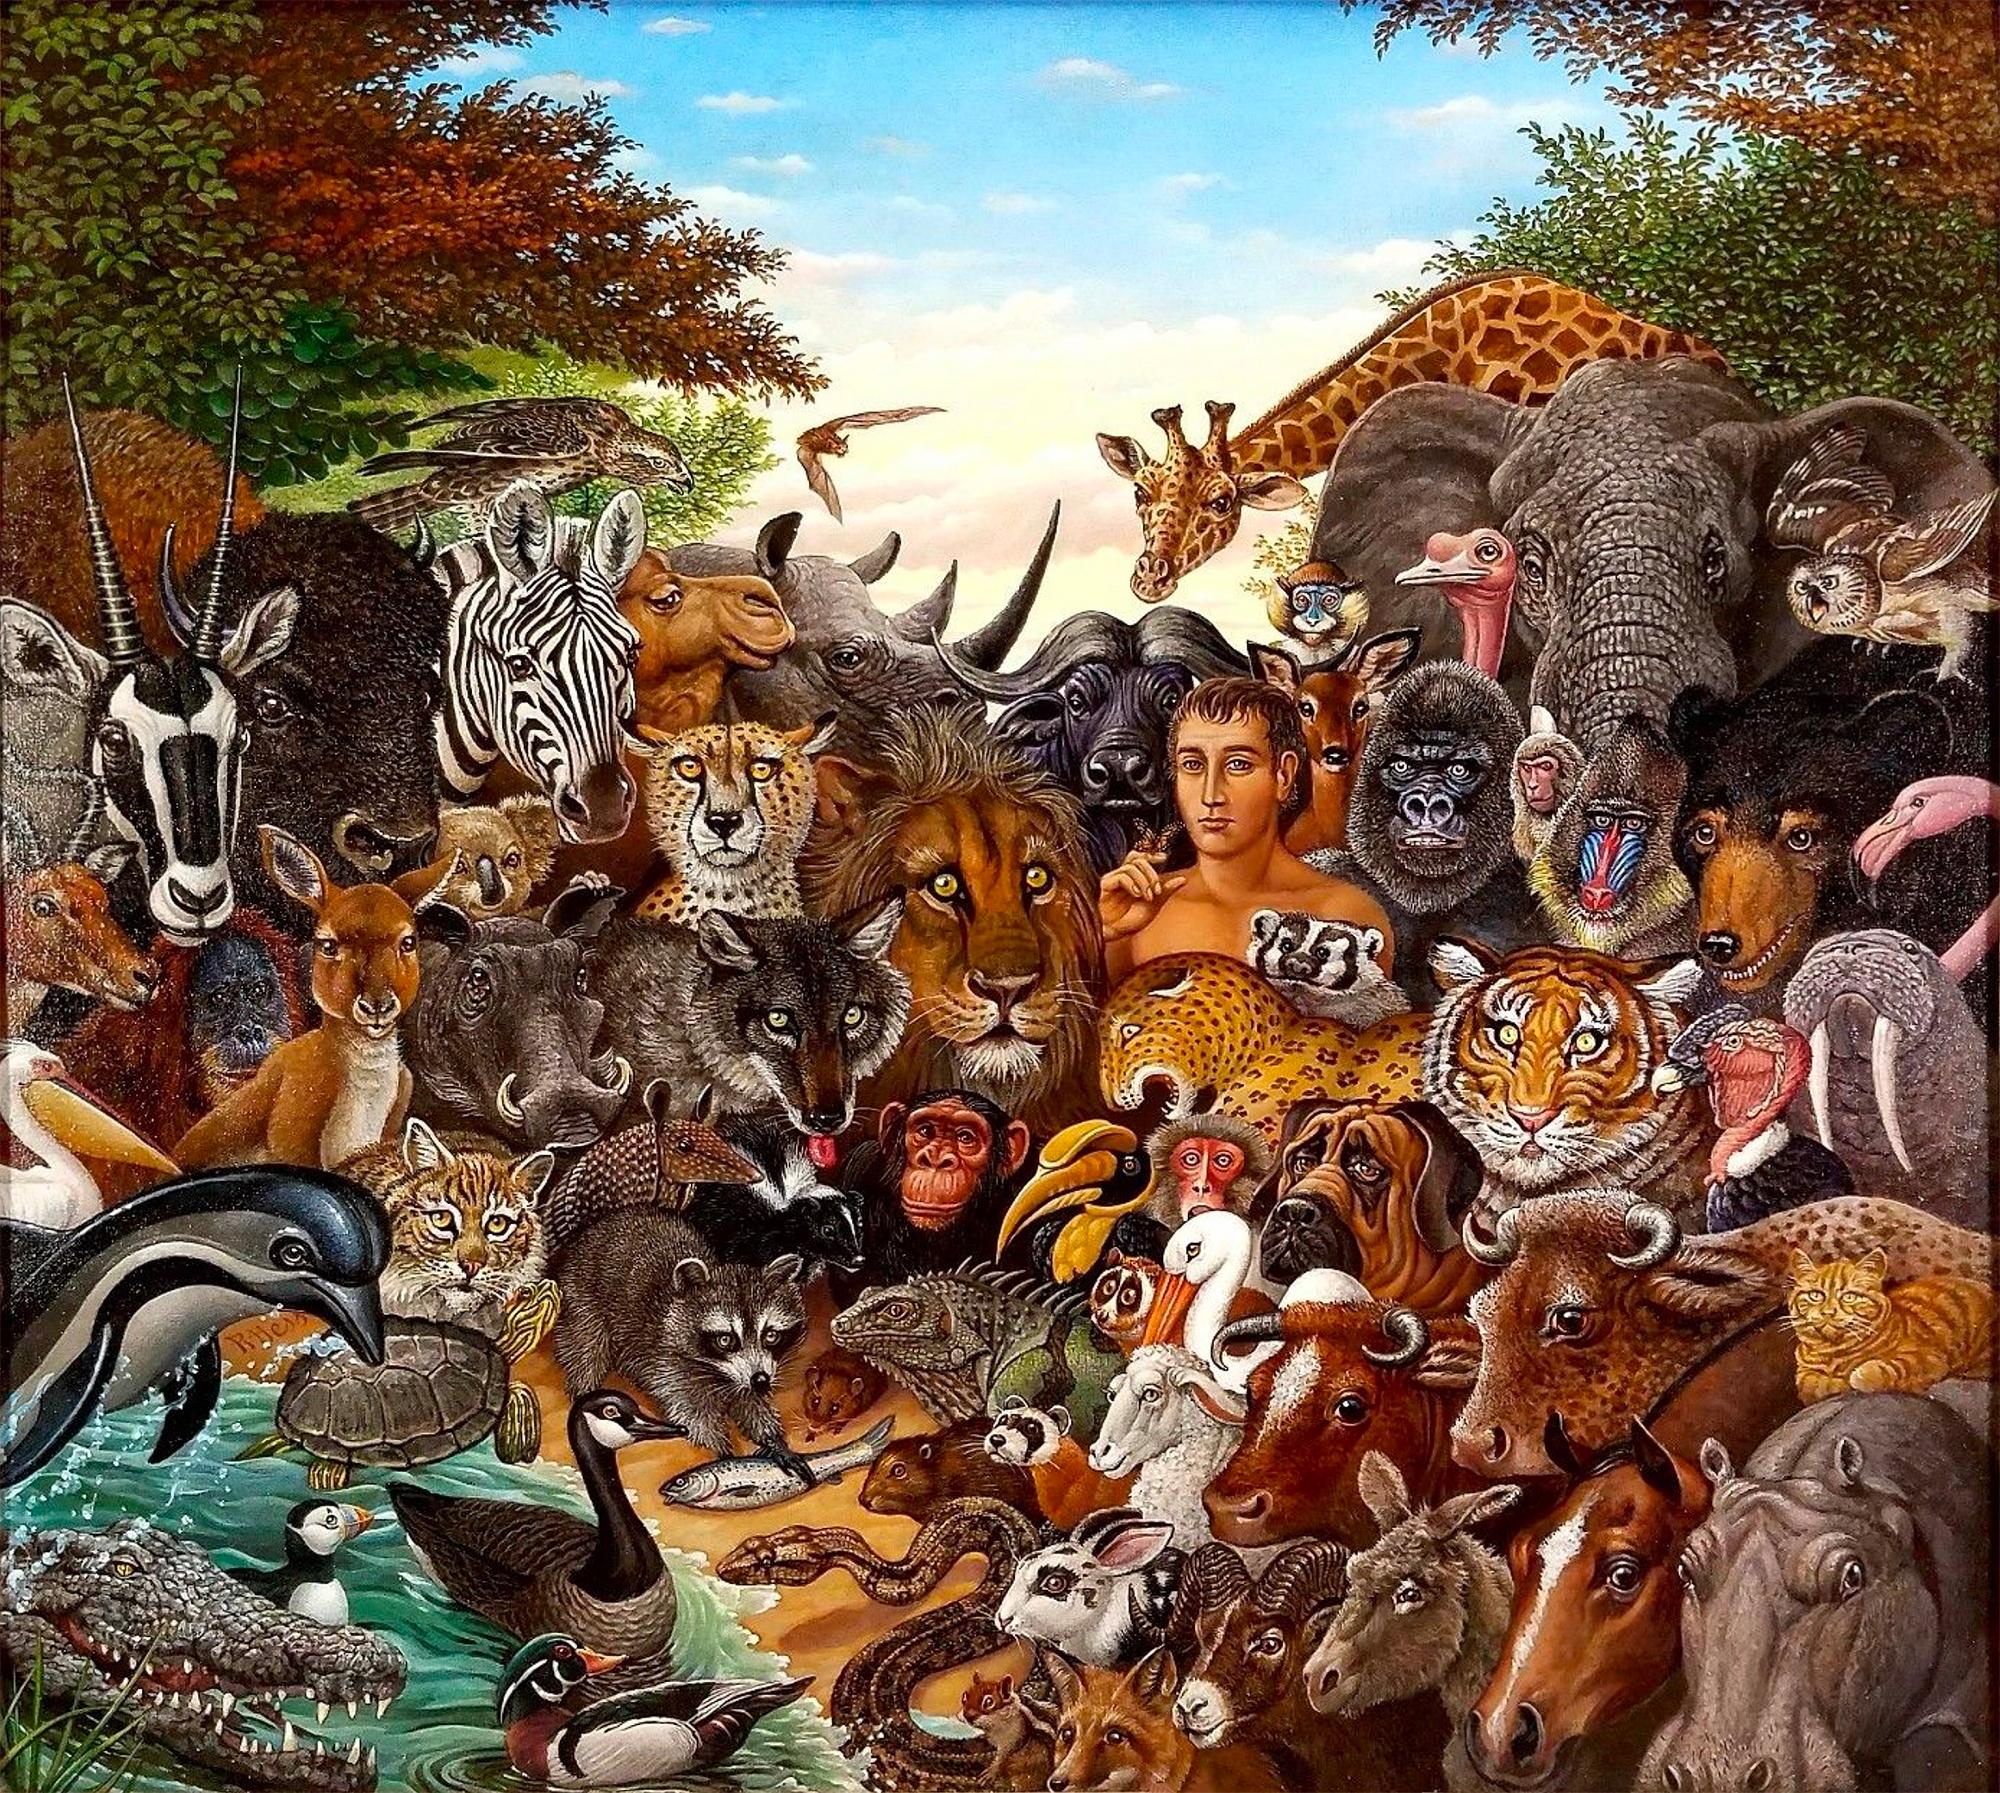 Tierreich, Zebra, Buffalo, Löwe, Giraffen, Elefant, Affen, Tiger,  Gorilla